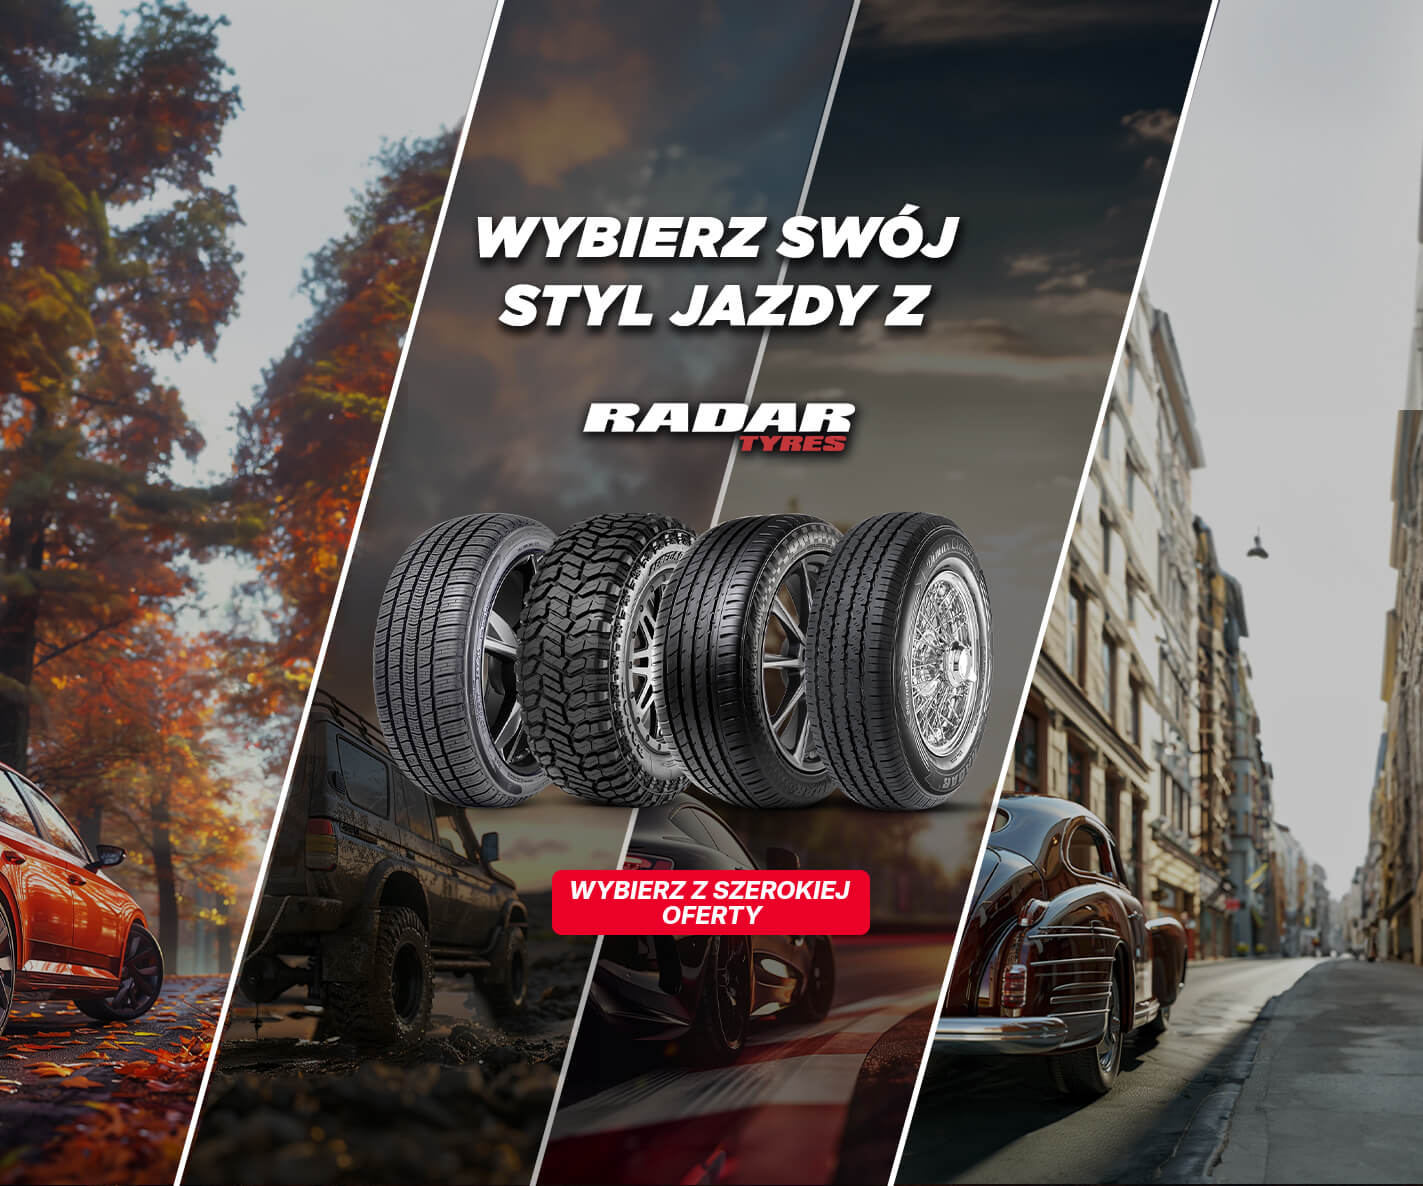 Wybierz swój styl jazdy z Radar!